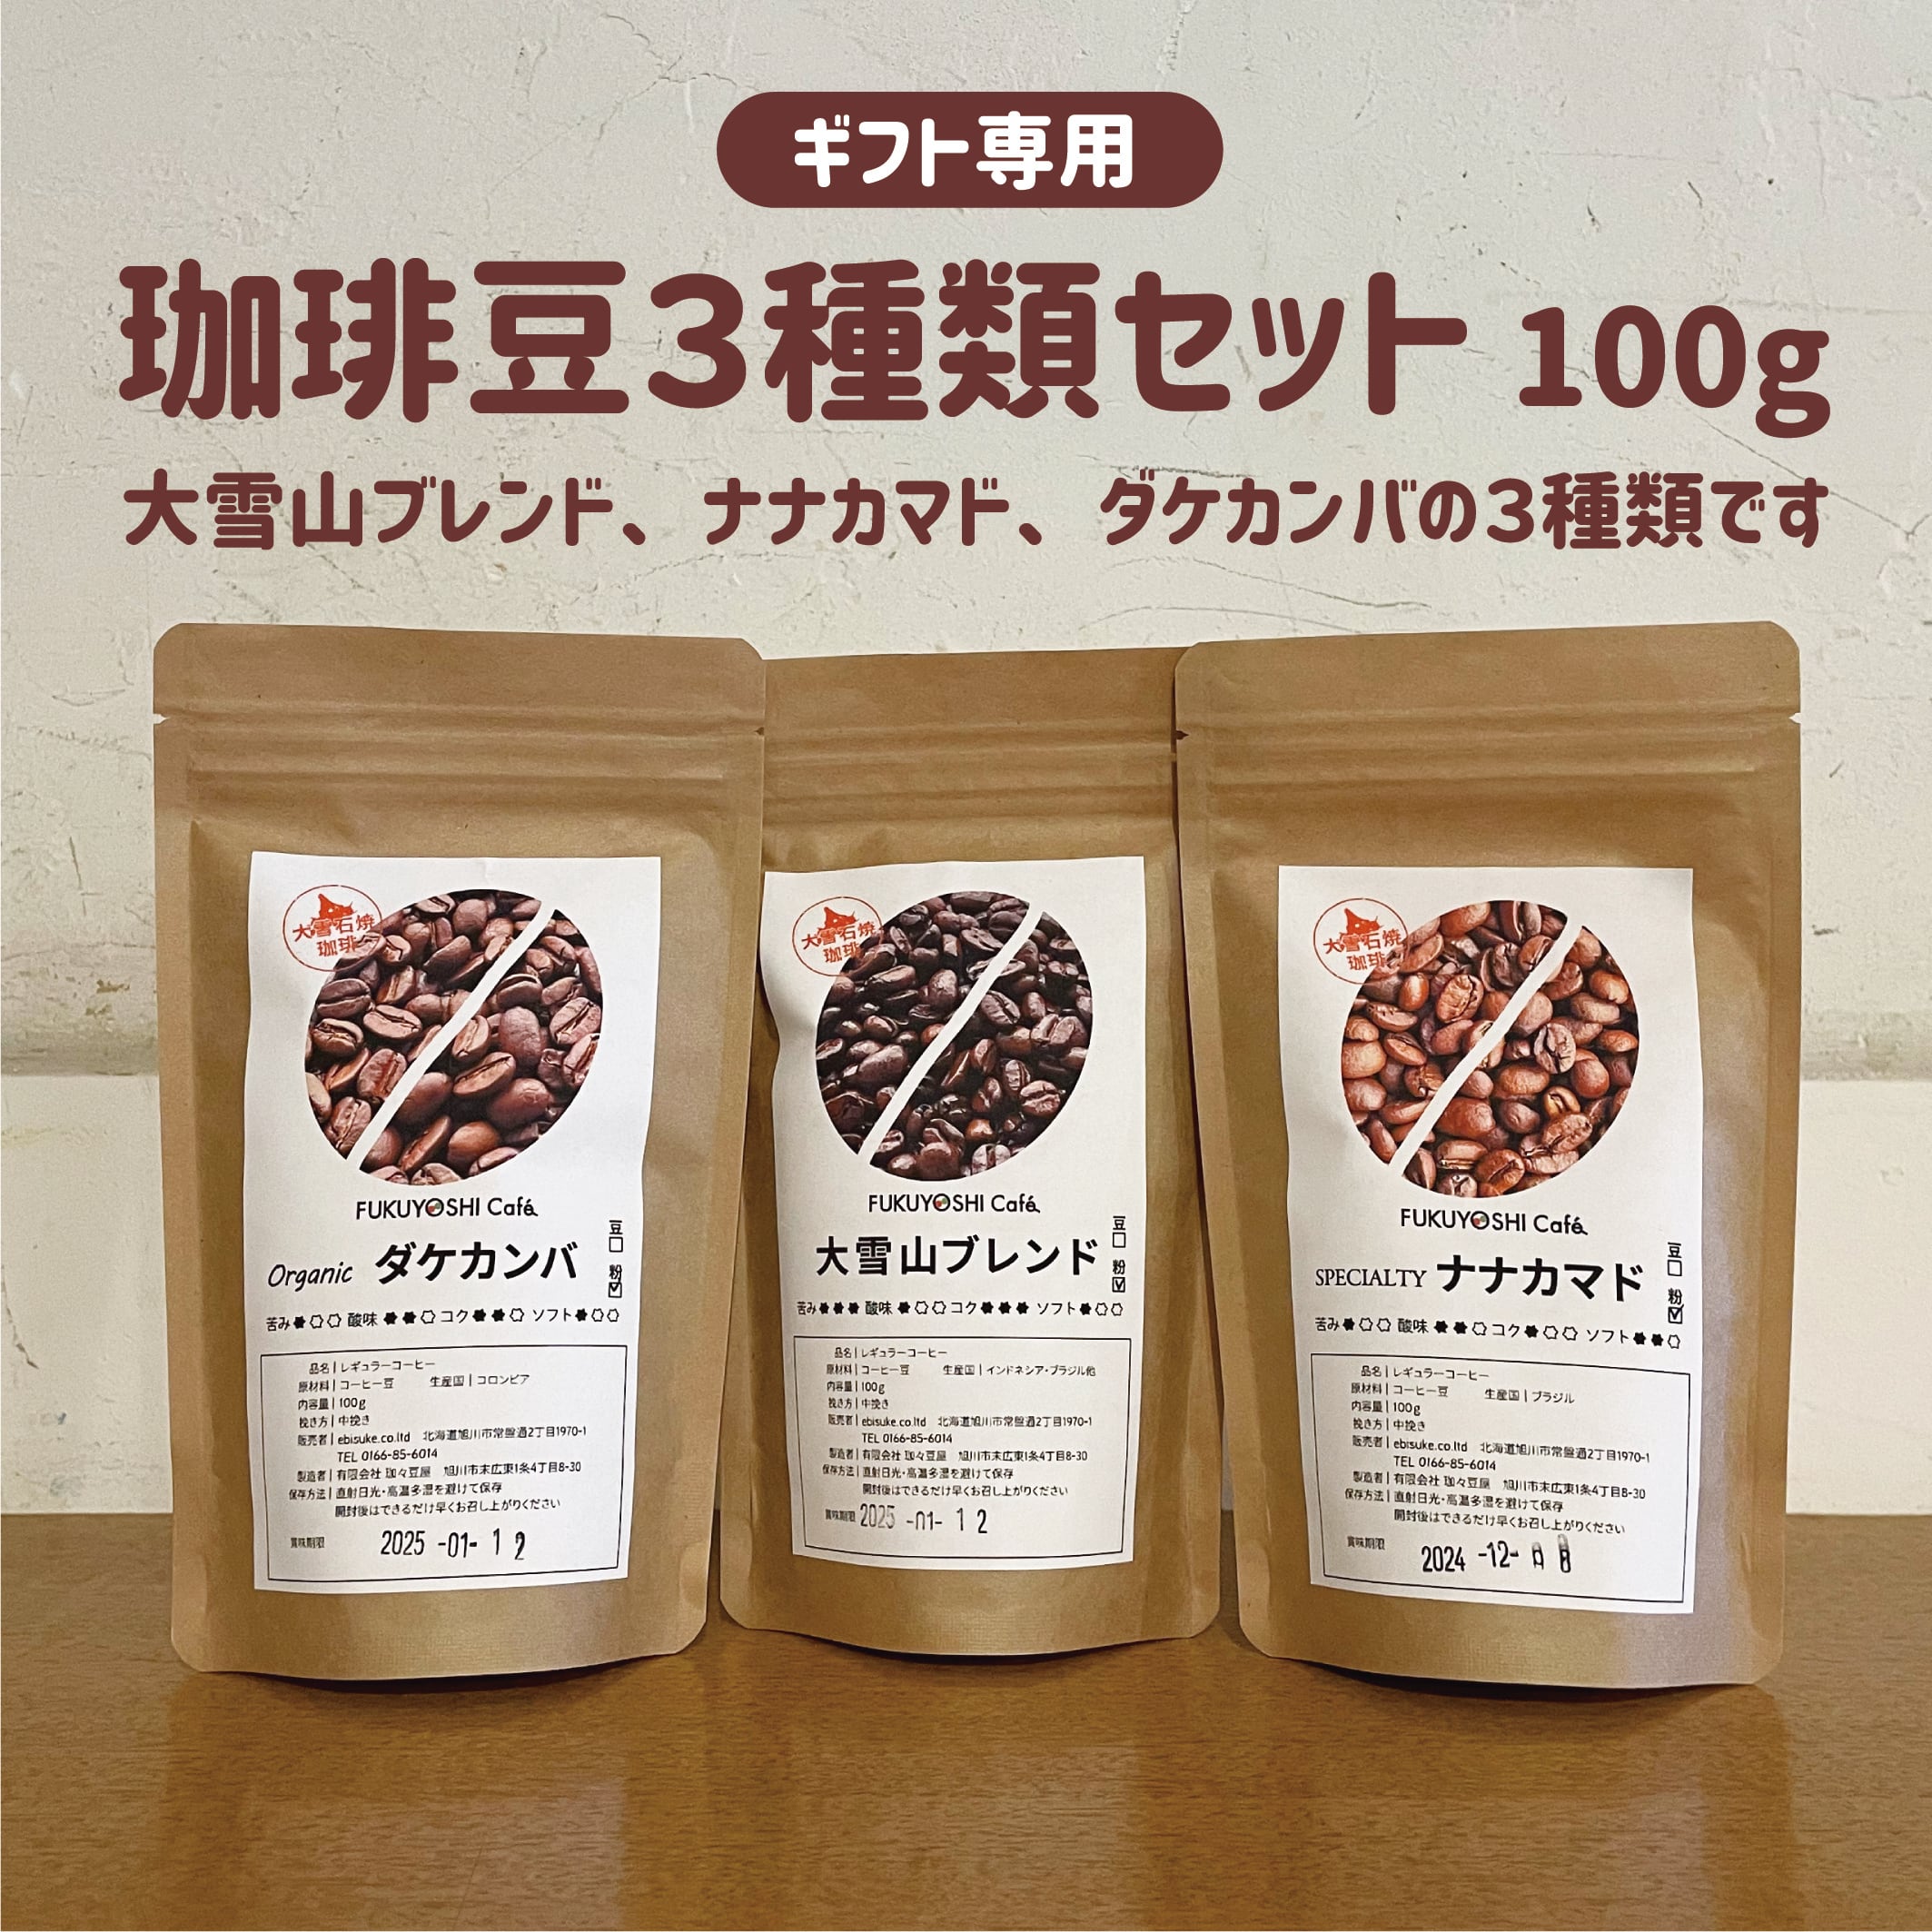 ギフト専用】珈琲豆3種類セット 100g 慶弔のお品に最適です | 福吉